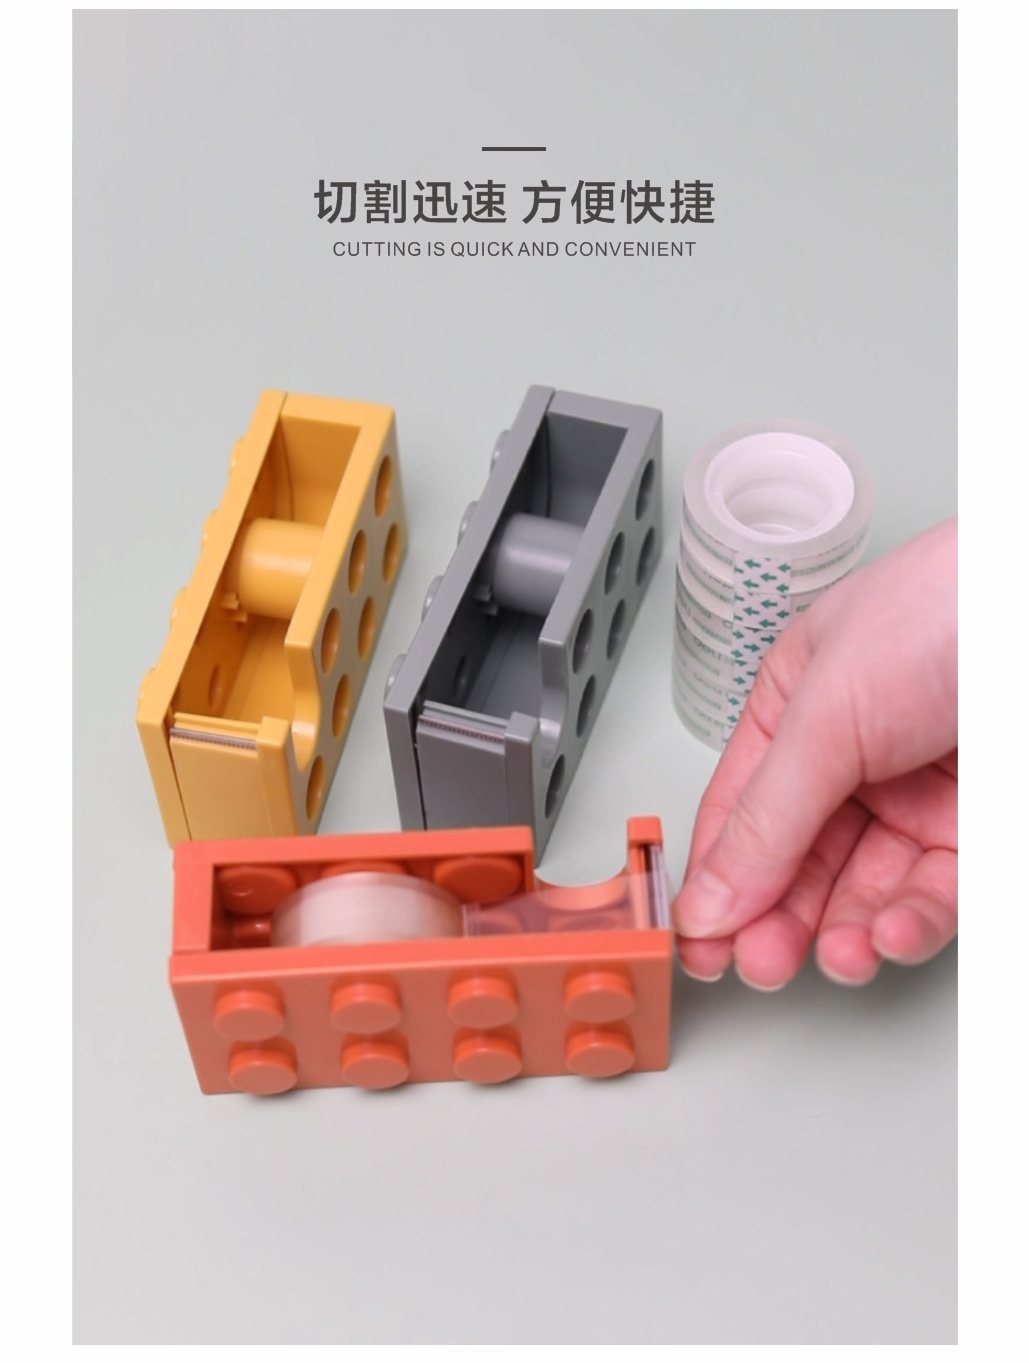 積木造型膠帶台 創意透明膠帶切割器 創意造型紙膠帶切割器3